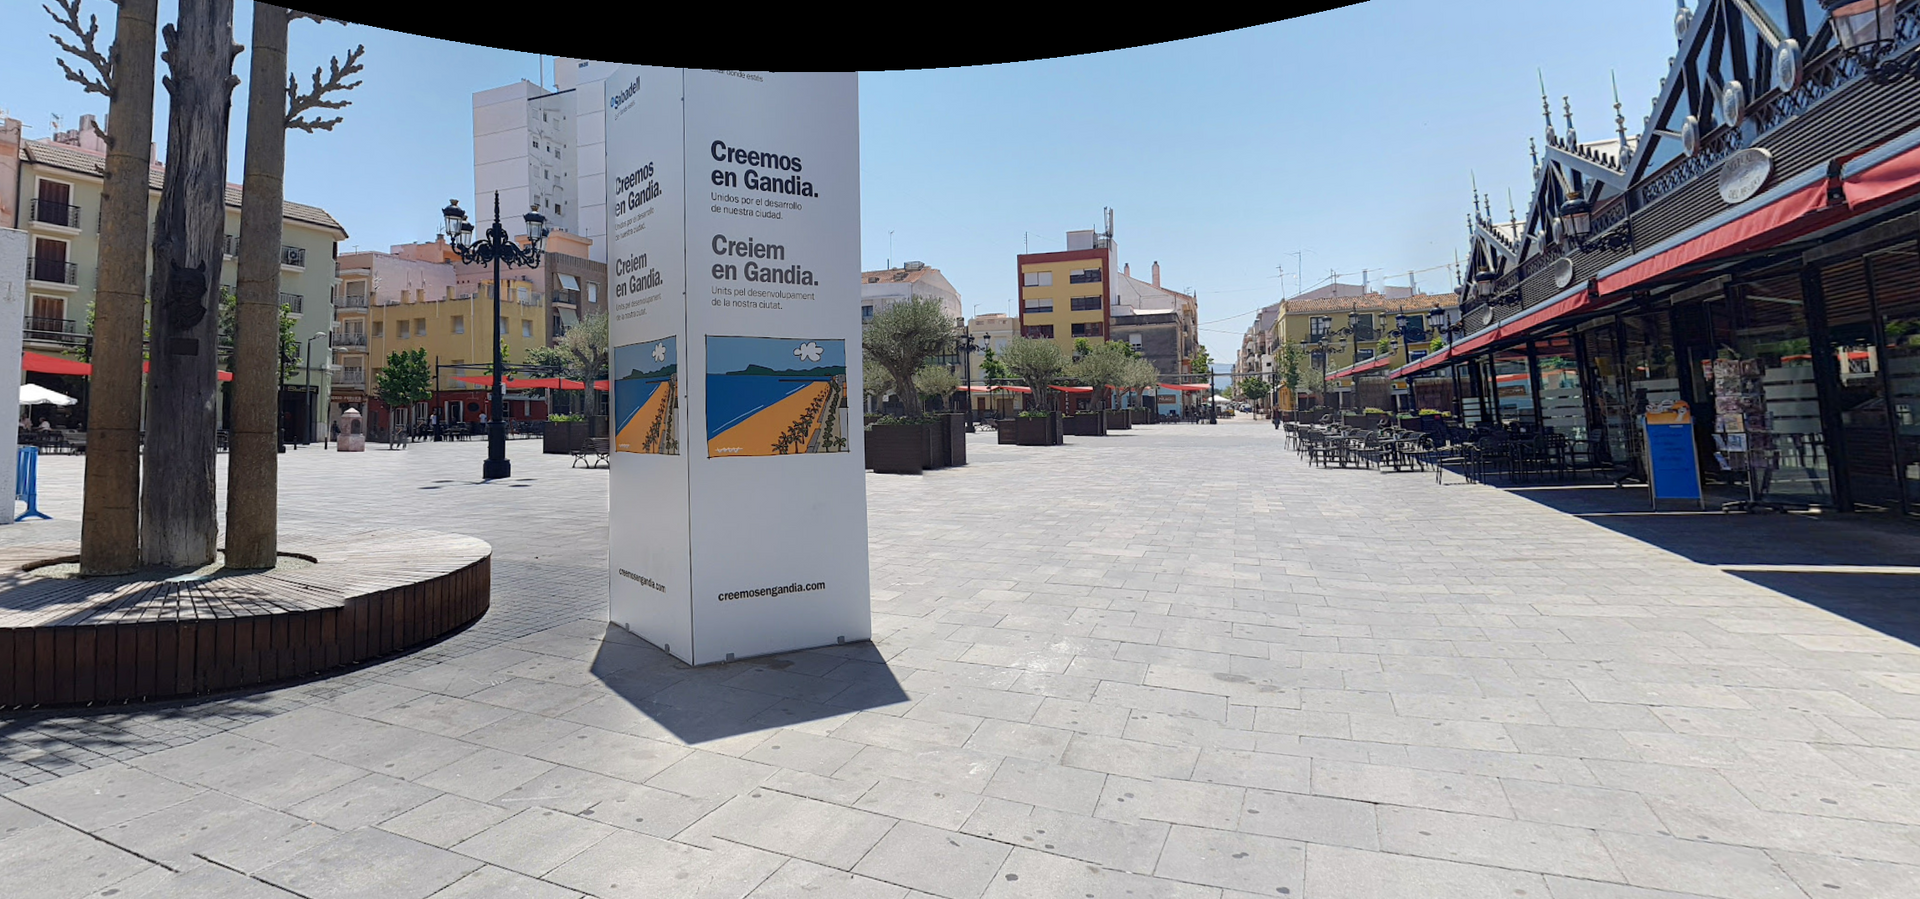 Plaza del Prado by Google Earth